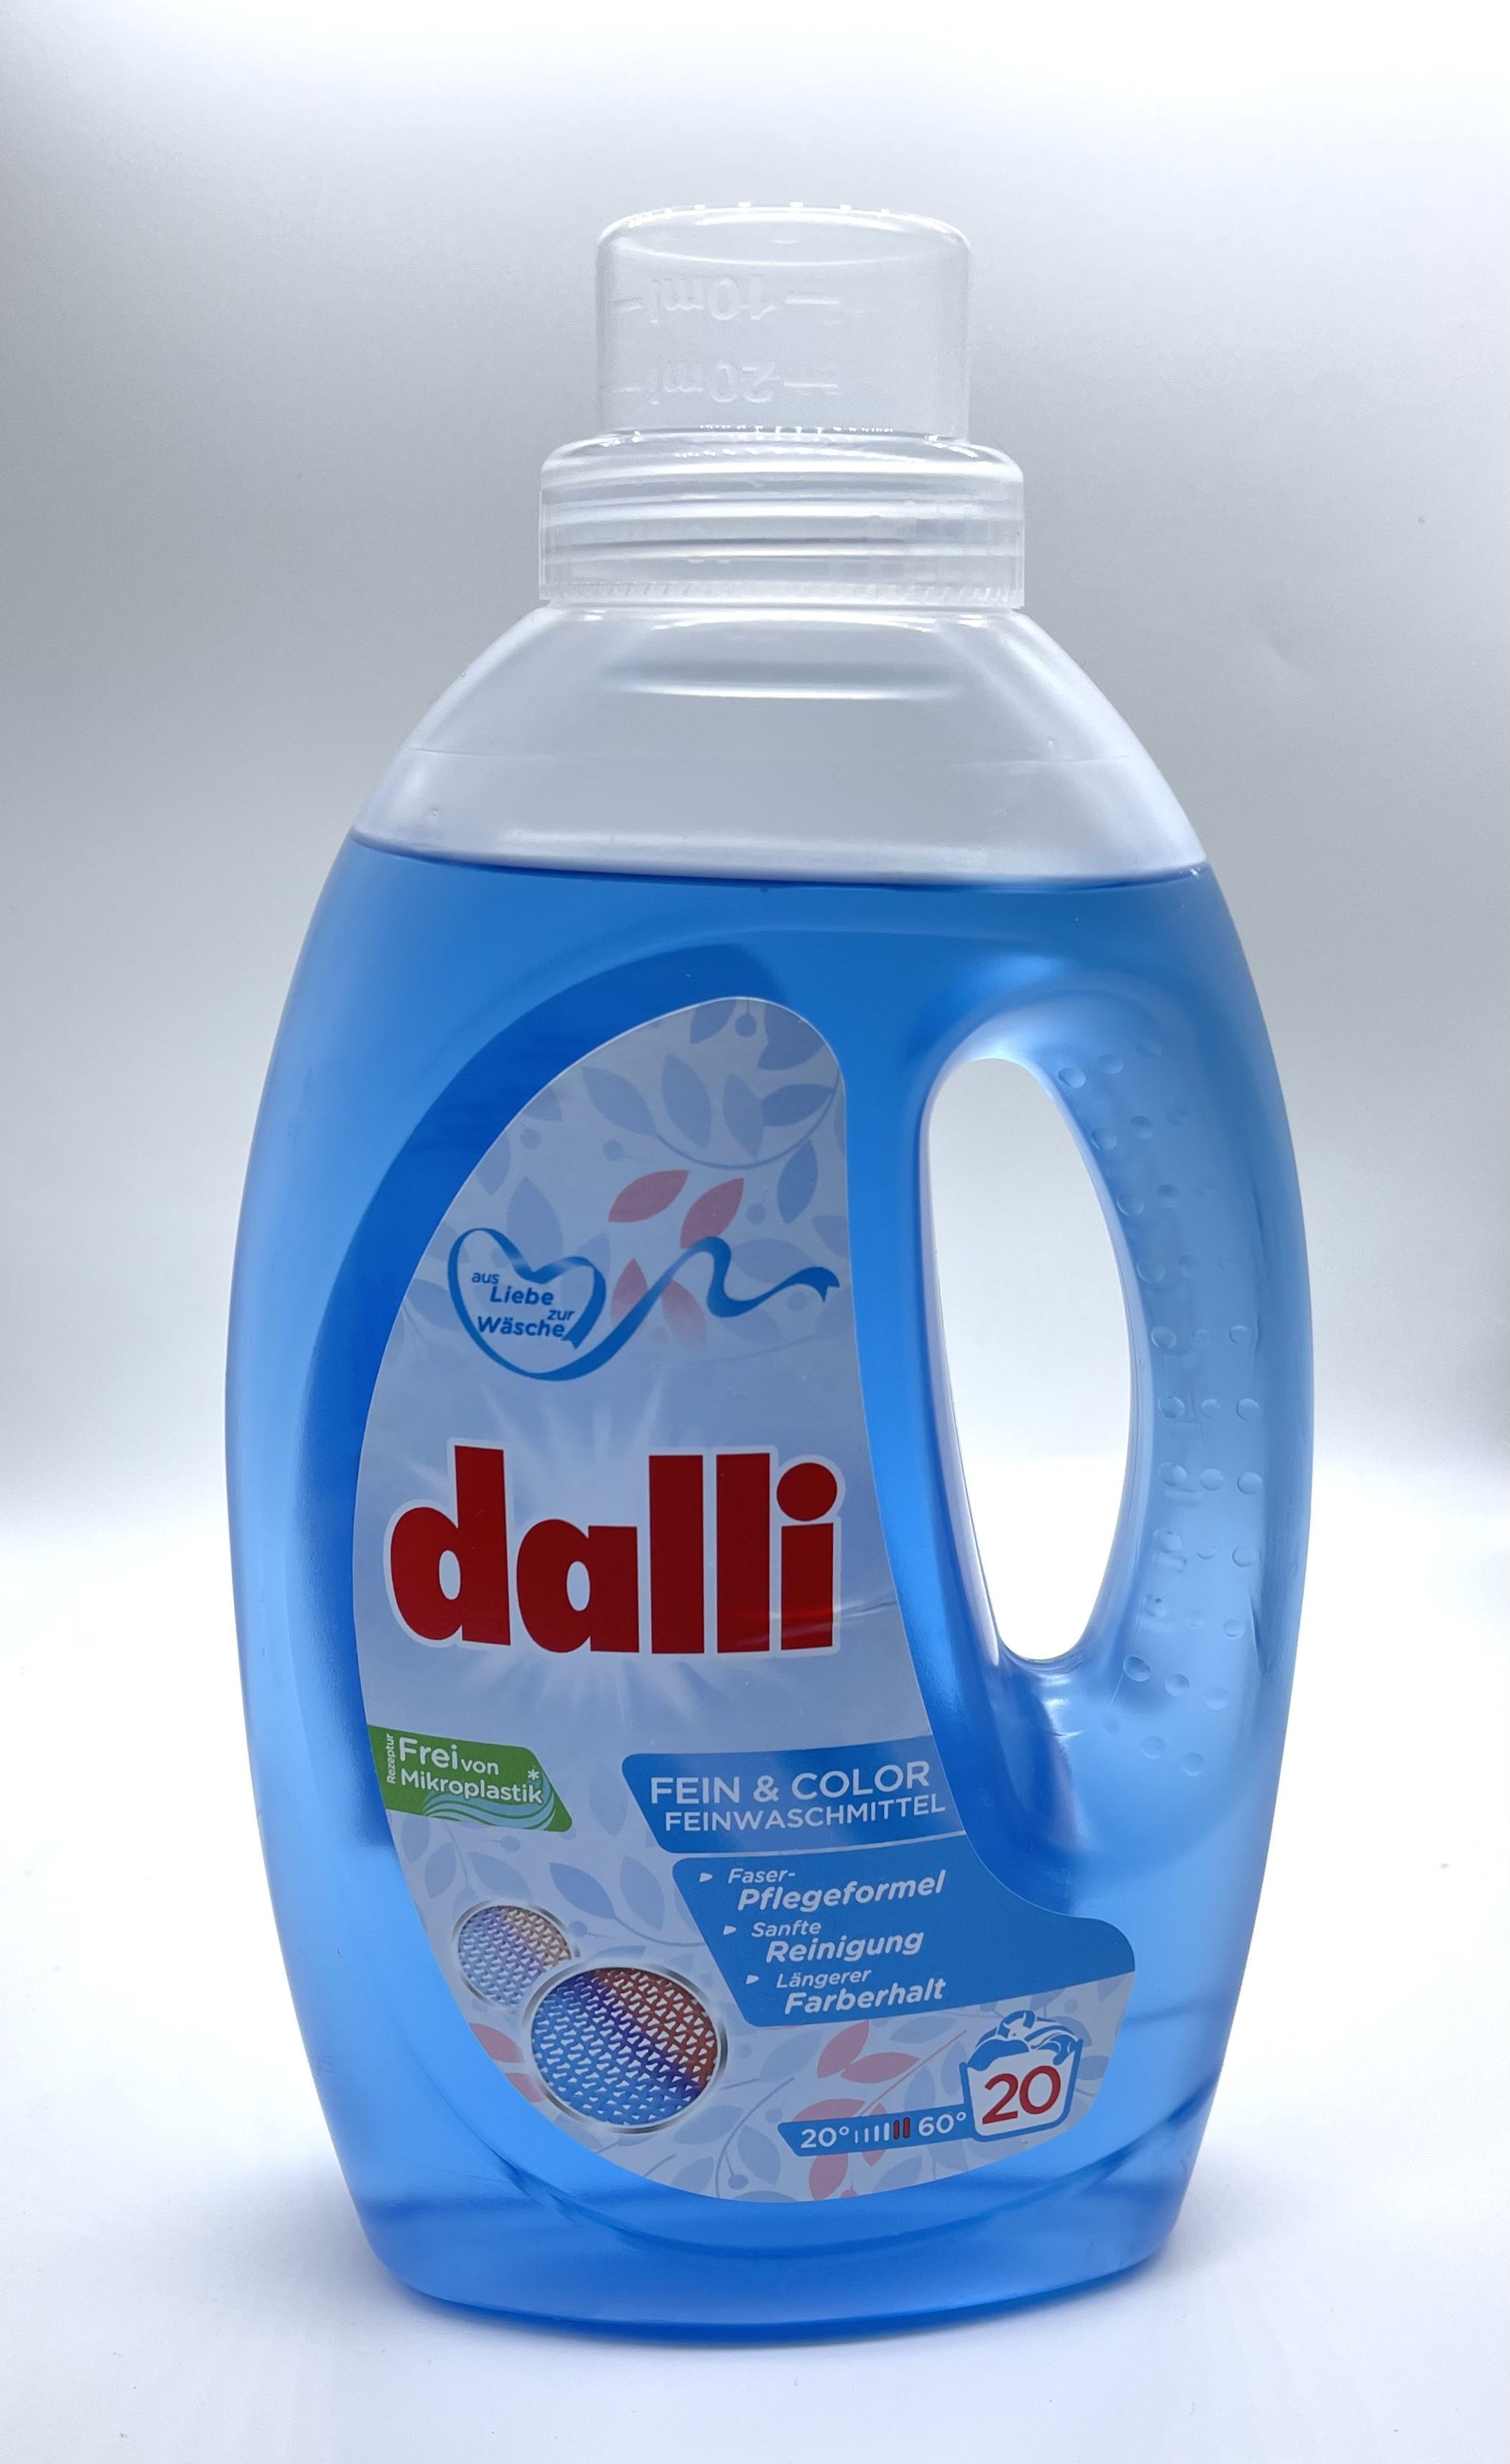 Dalli Fain & Color Универсальное жидкое средство для стирки деликатных тканей 1,1 л на 20 стирок